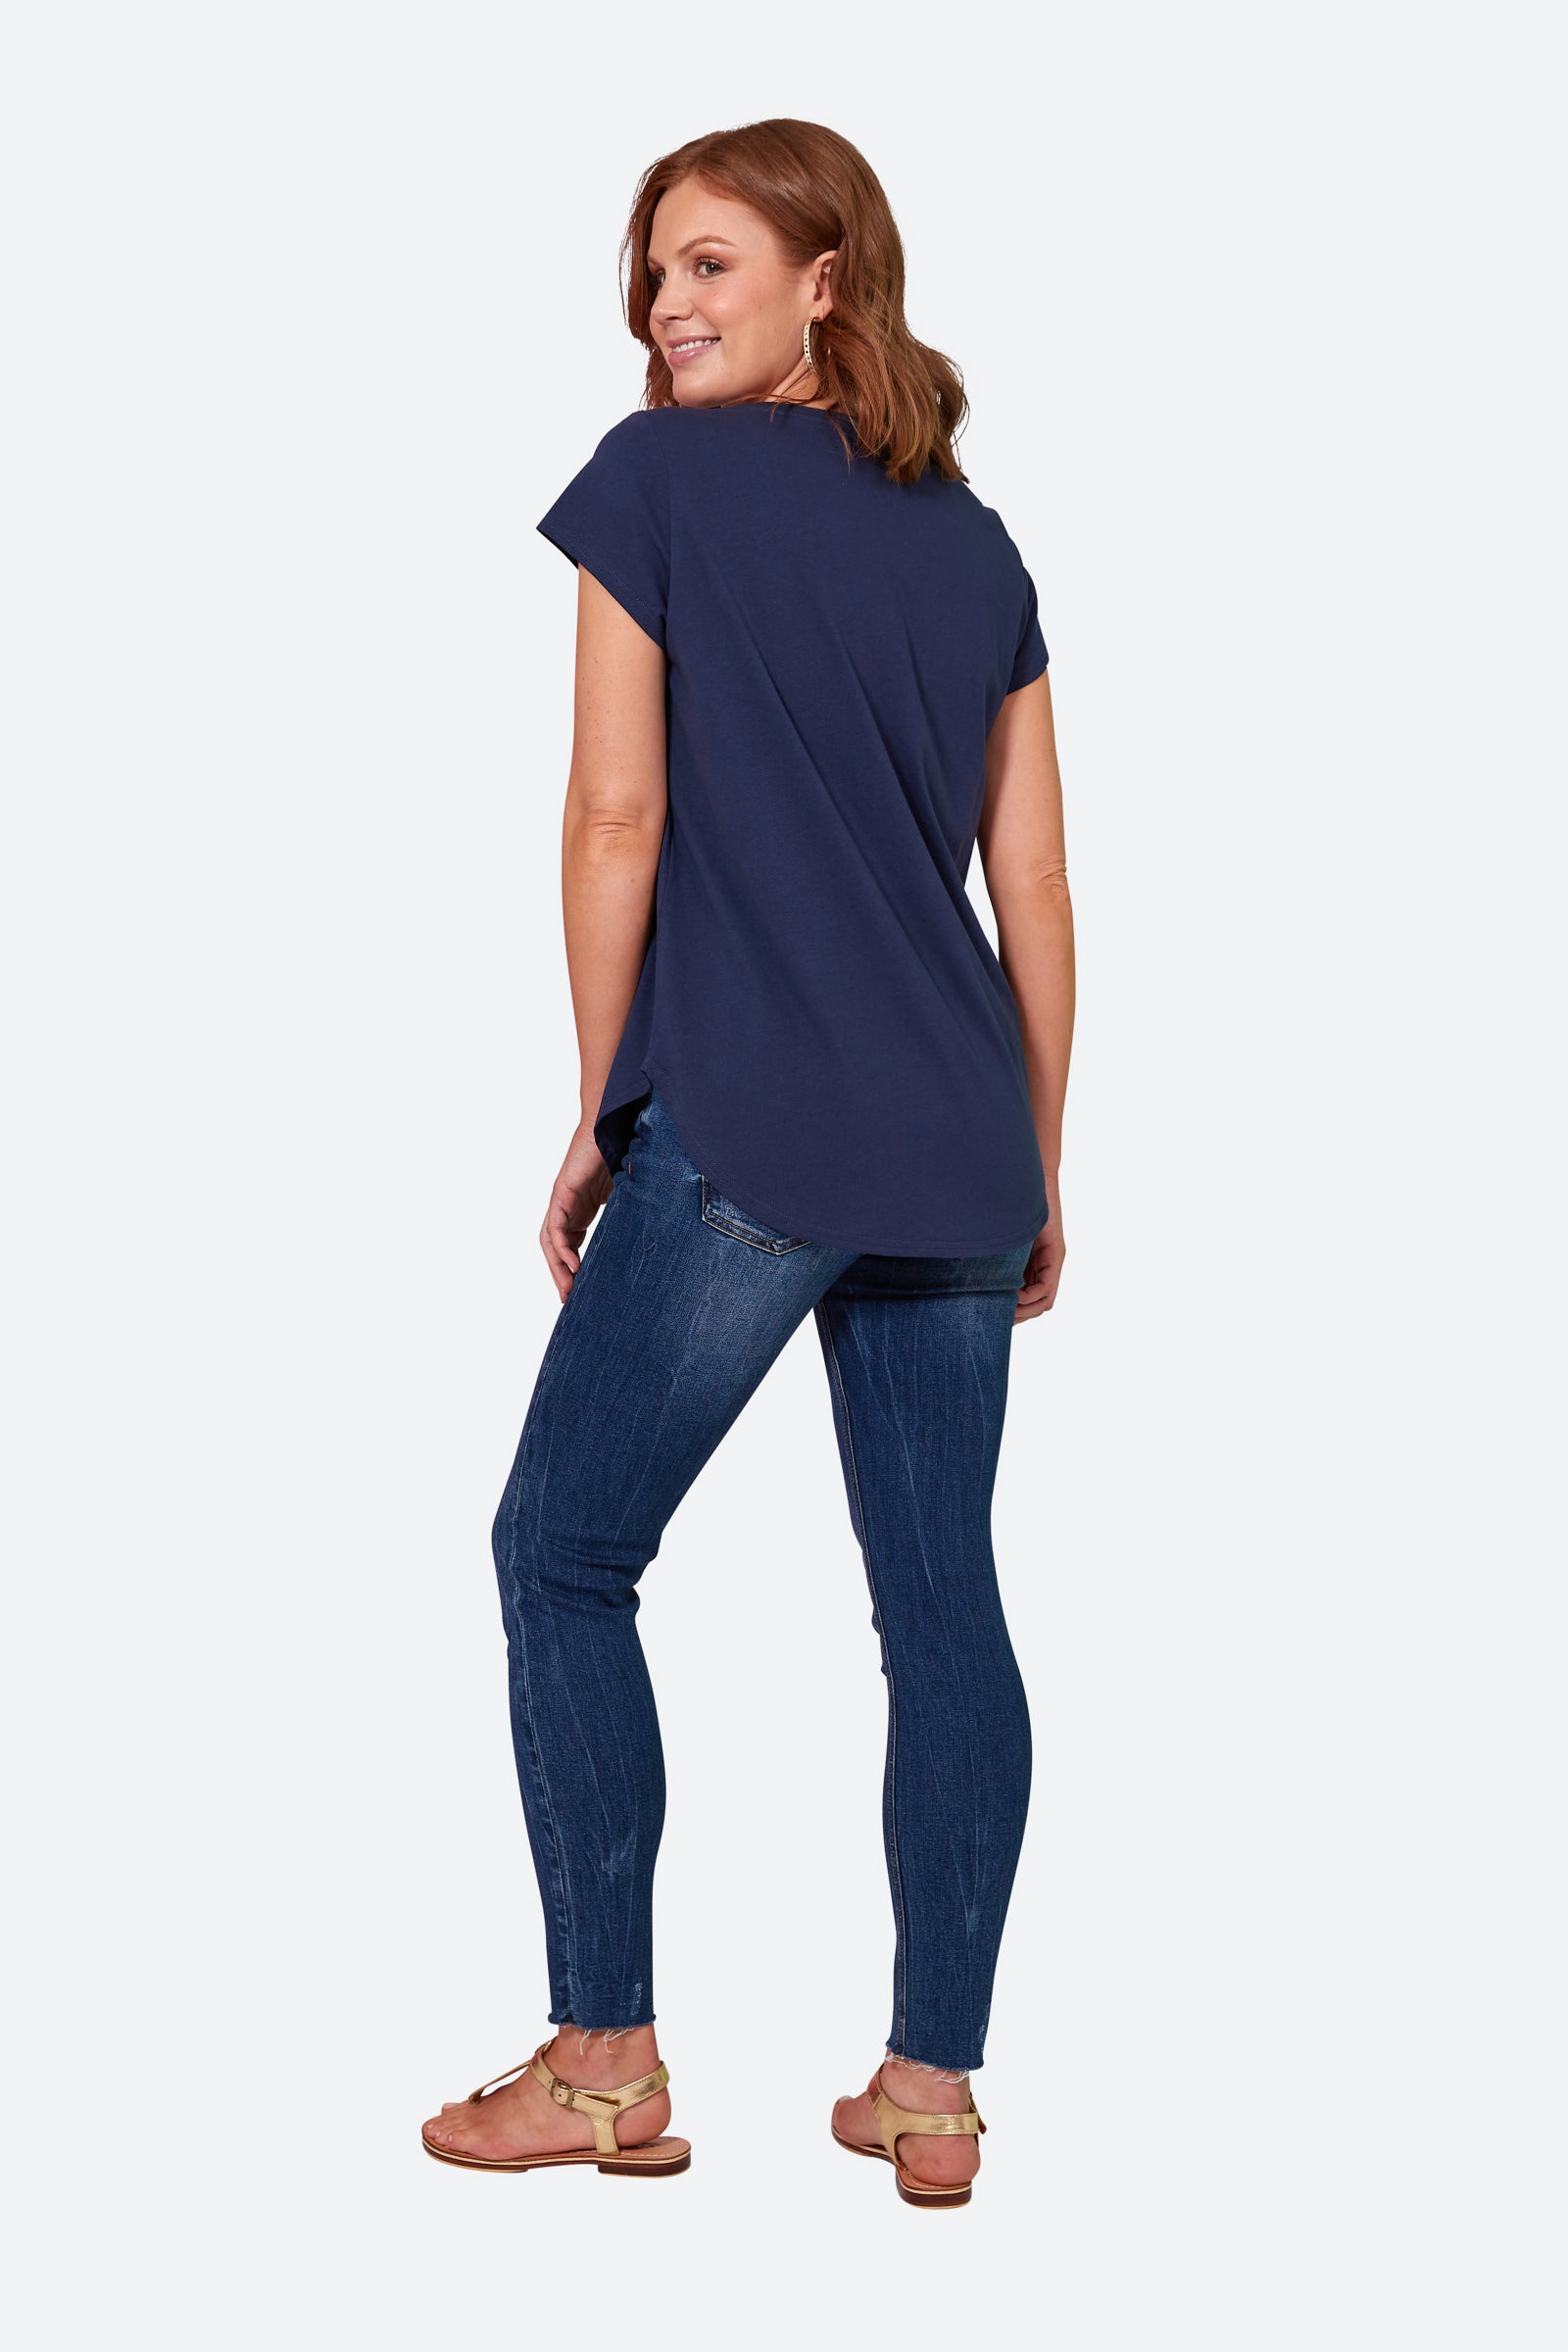 Reveler Tshirt - Sapphire - eb&ive Clothing - Top Tshirt S/S